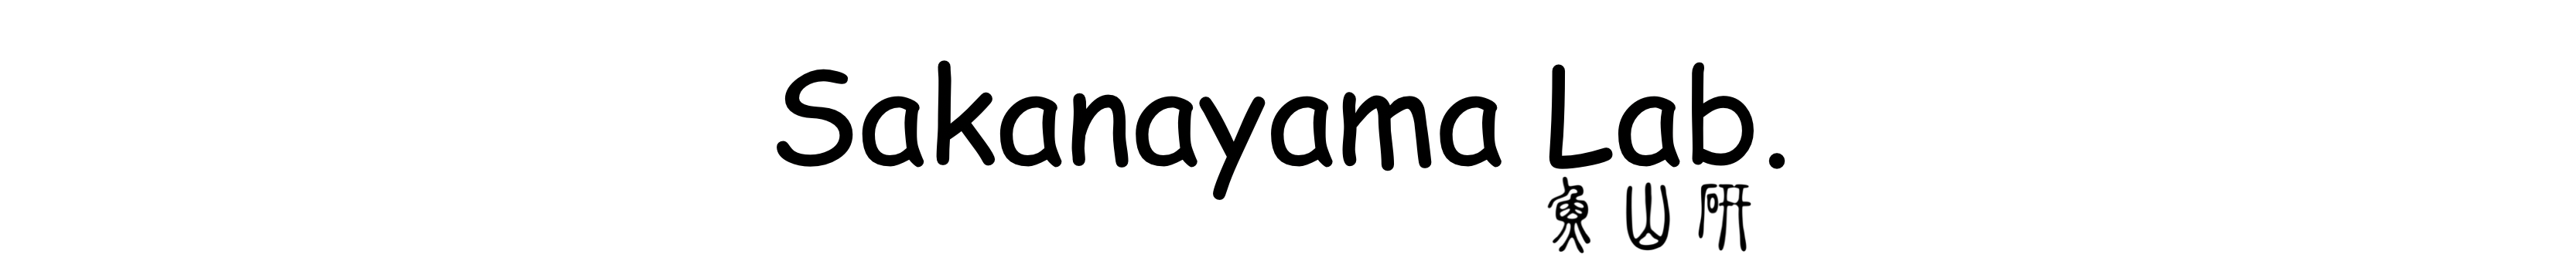 Sakanayama Log